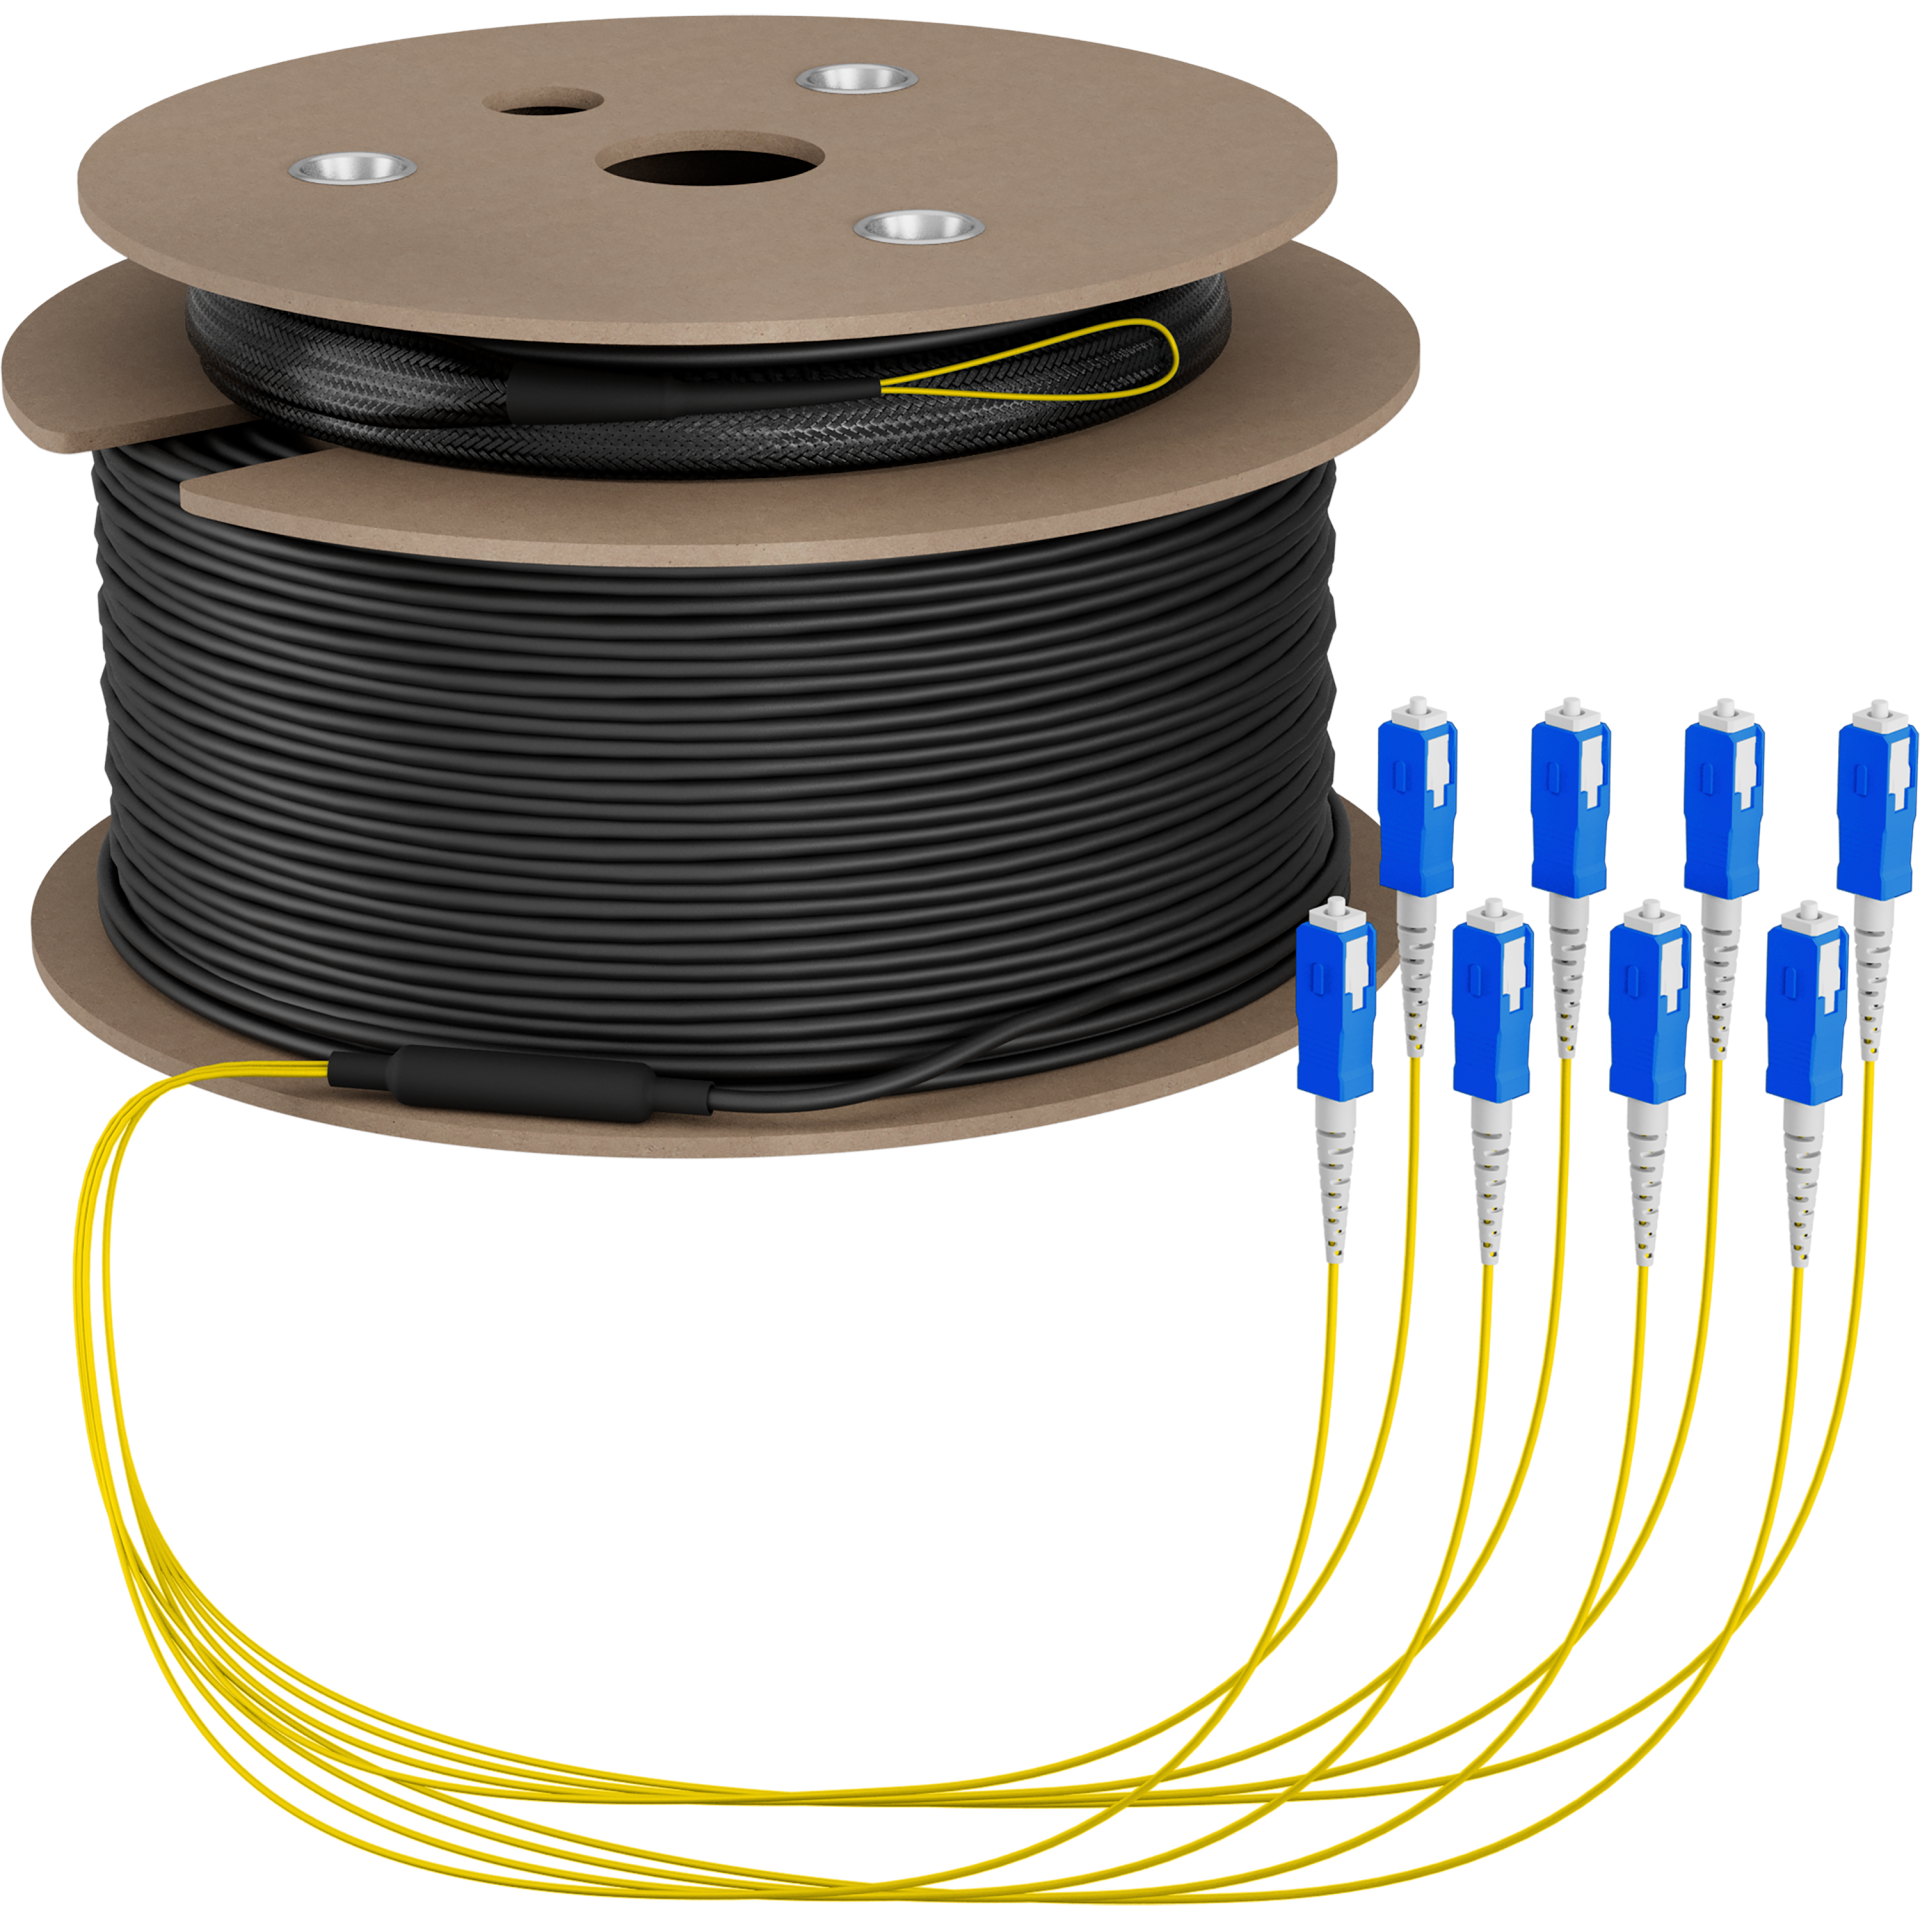 Trunk cable U-DQ(ZN)BH OS2 8E (1x8) SC-SC,120m Dca LSZH